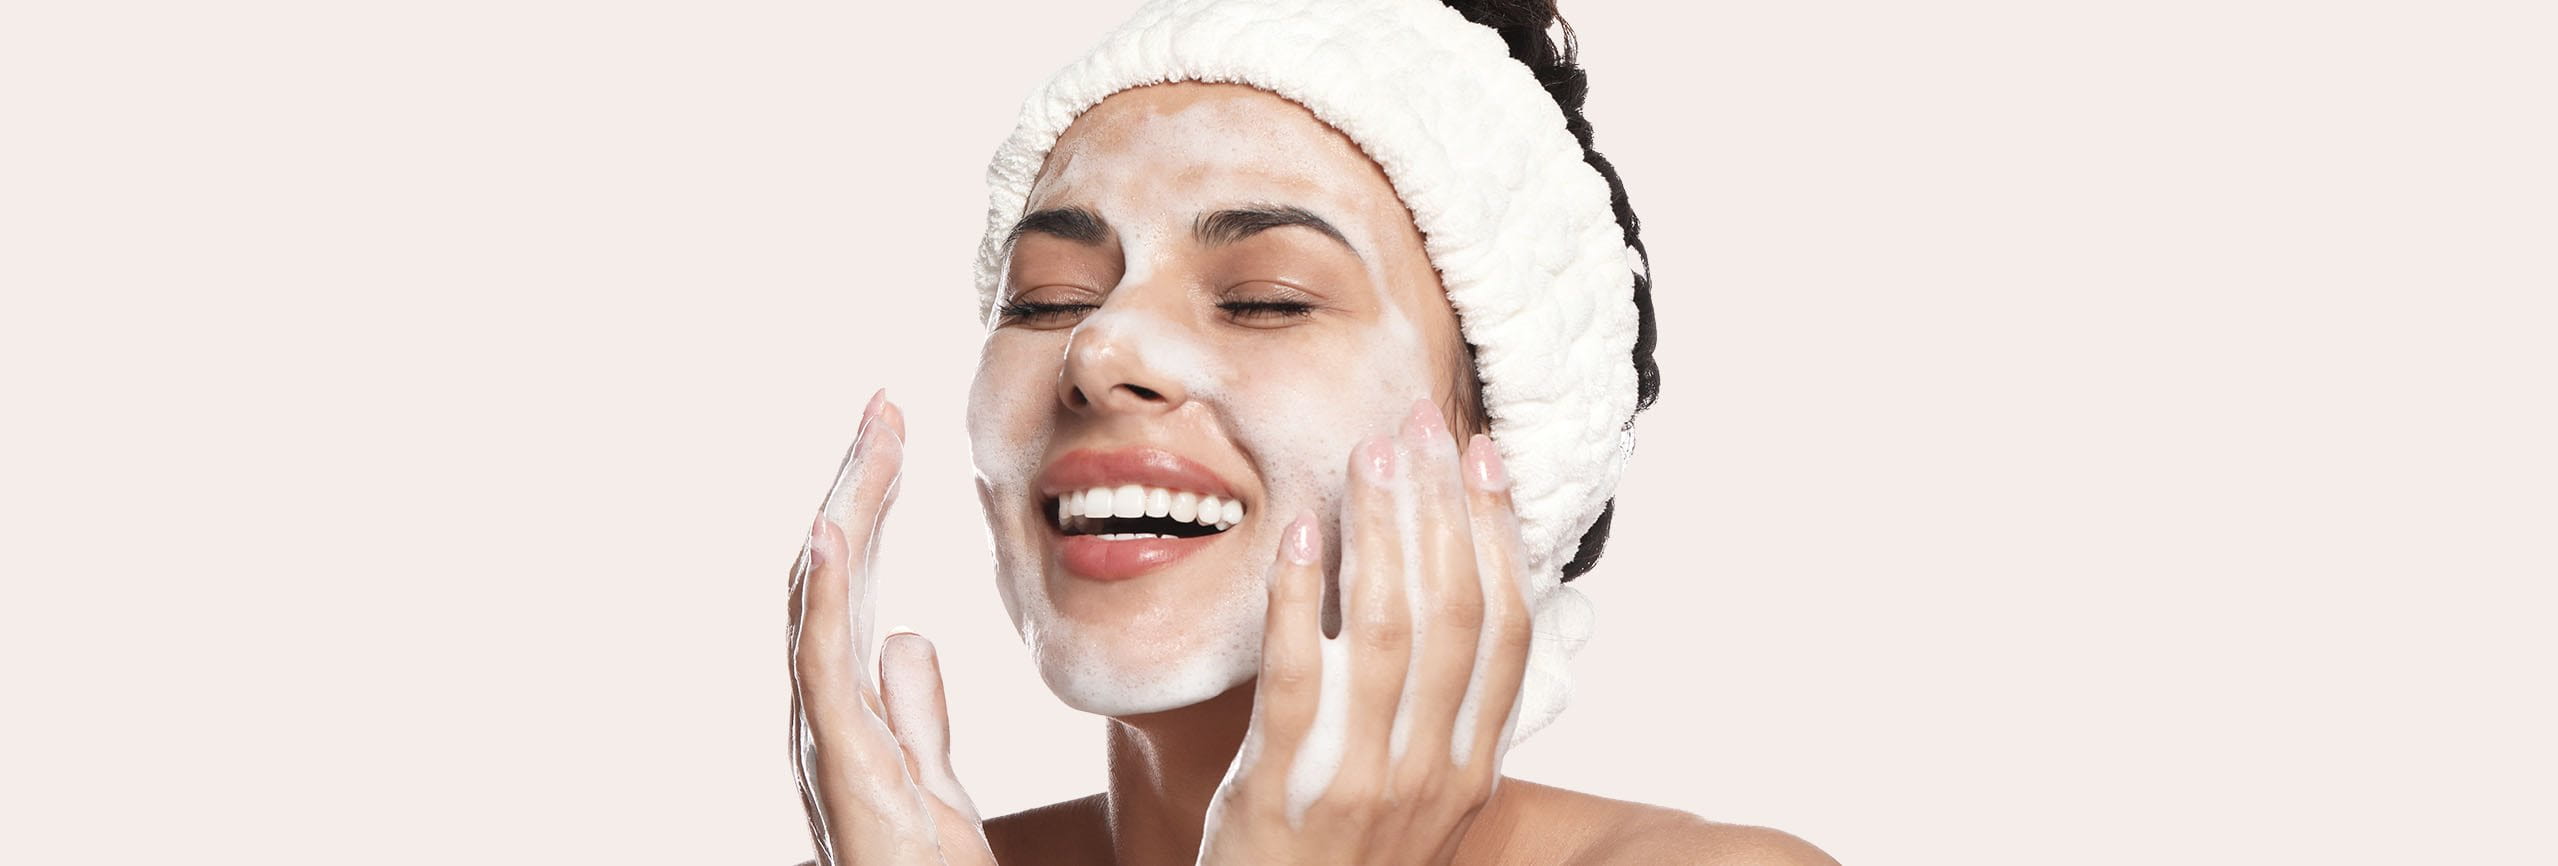 Cuidado facial según tu tipo de piel